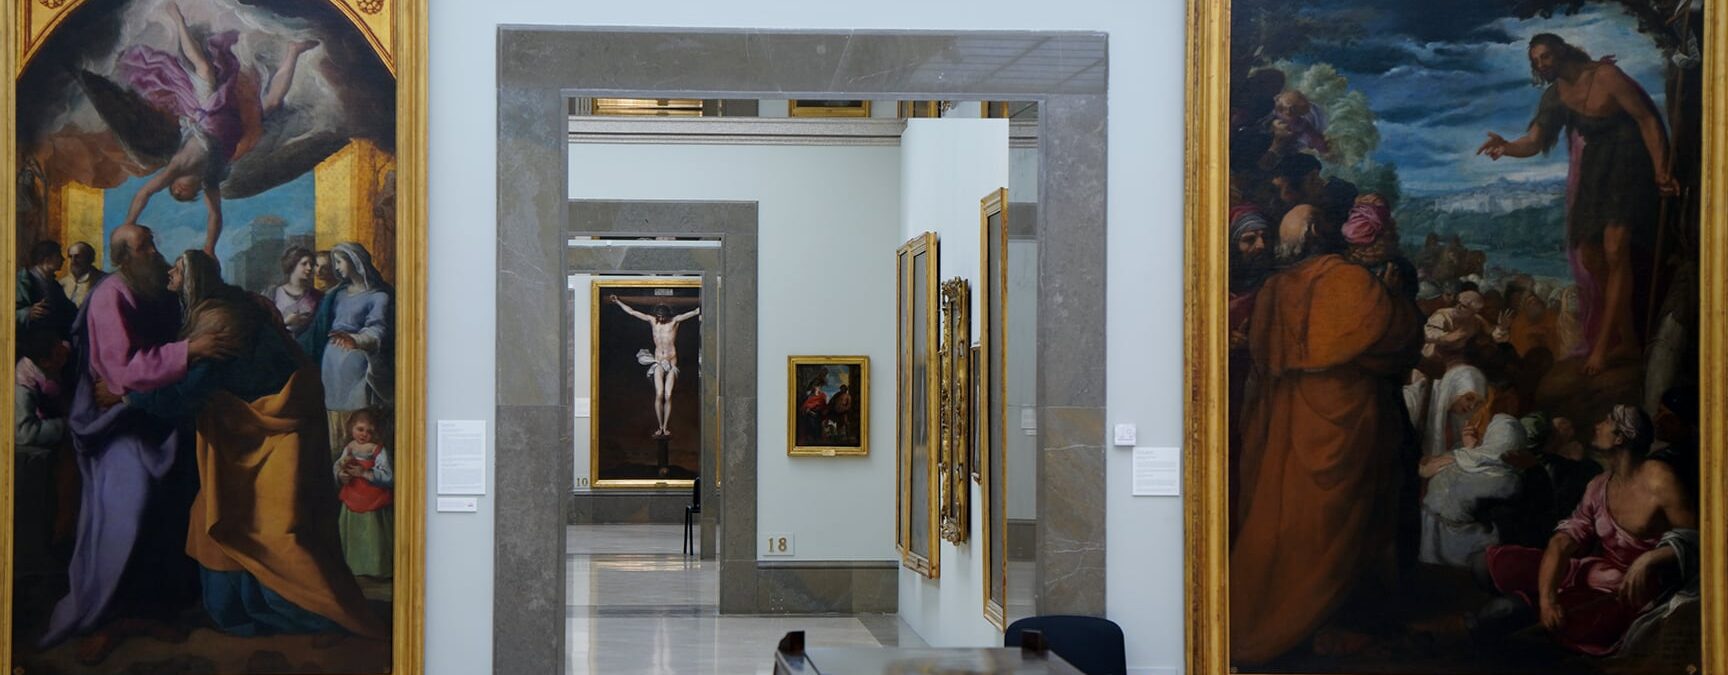 MUSEO DE LA REAL ACADEMIA DE BELLAS ARTES DE SAN FERNANDO		Madrid	Madrid	Museo